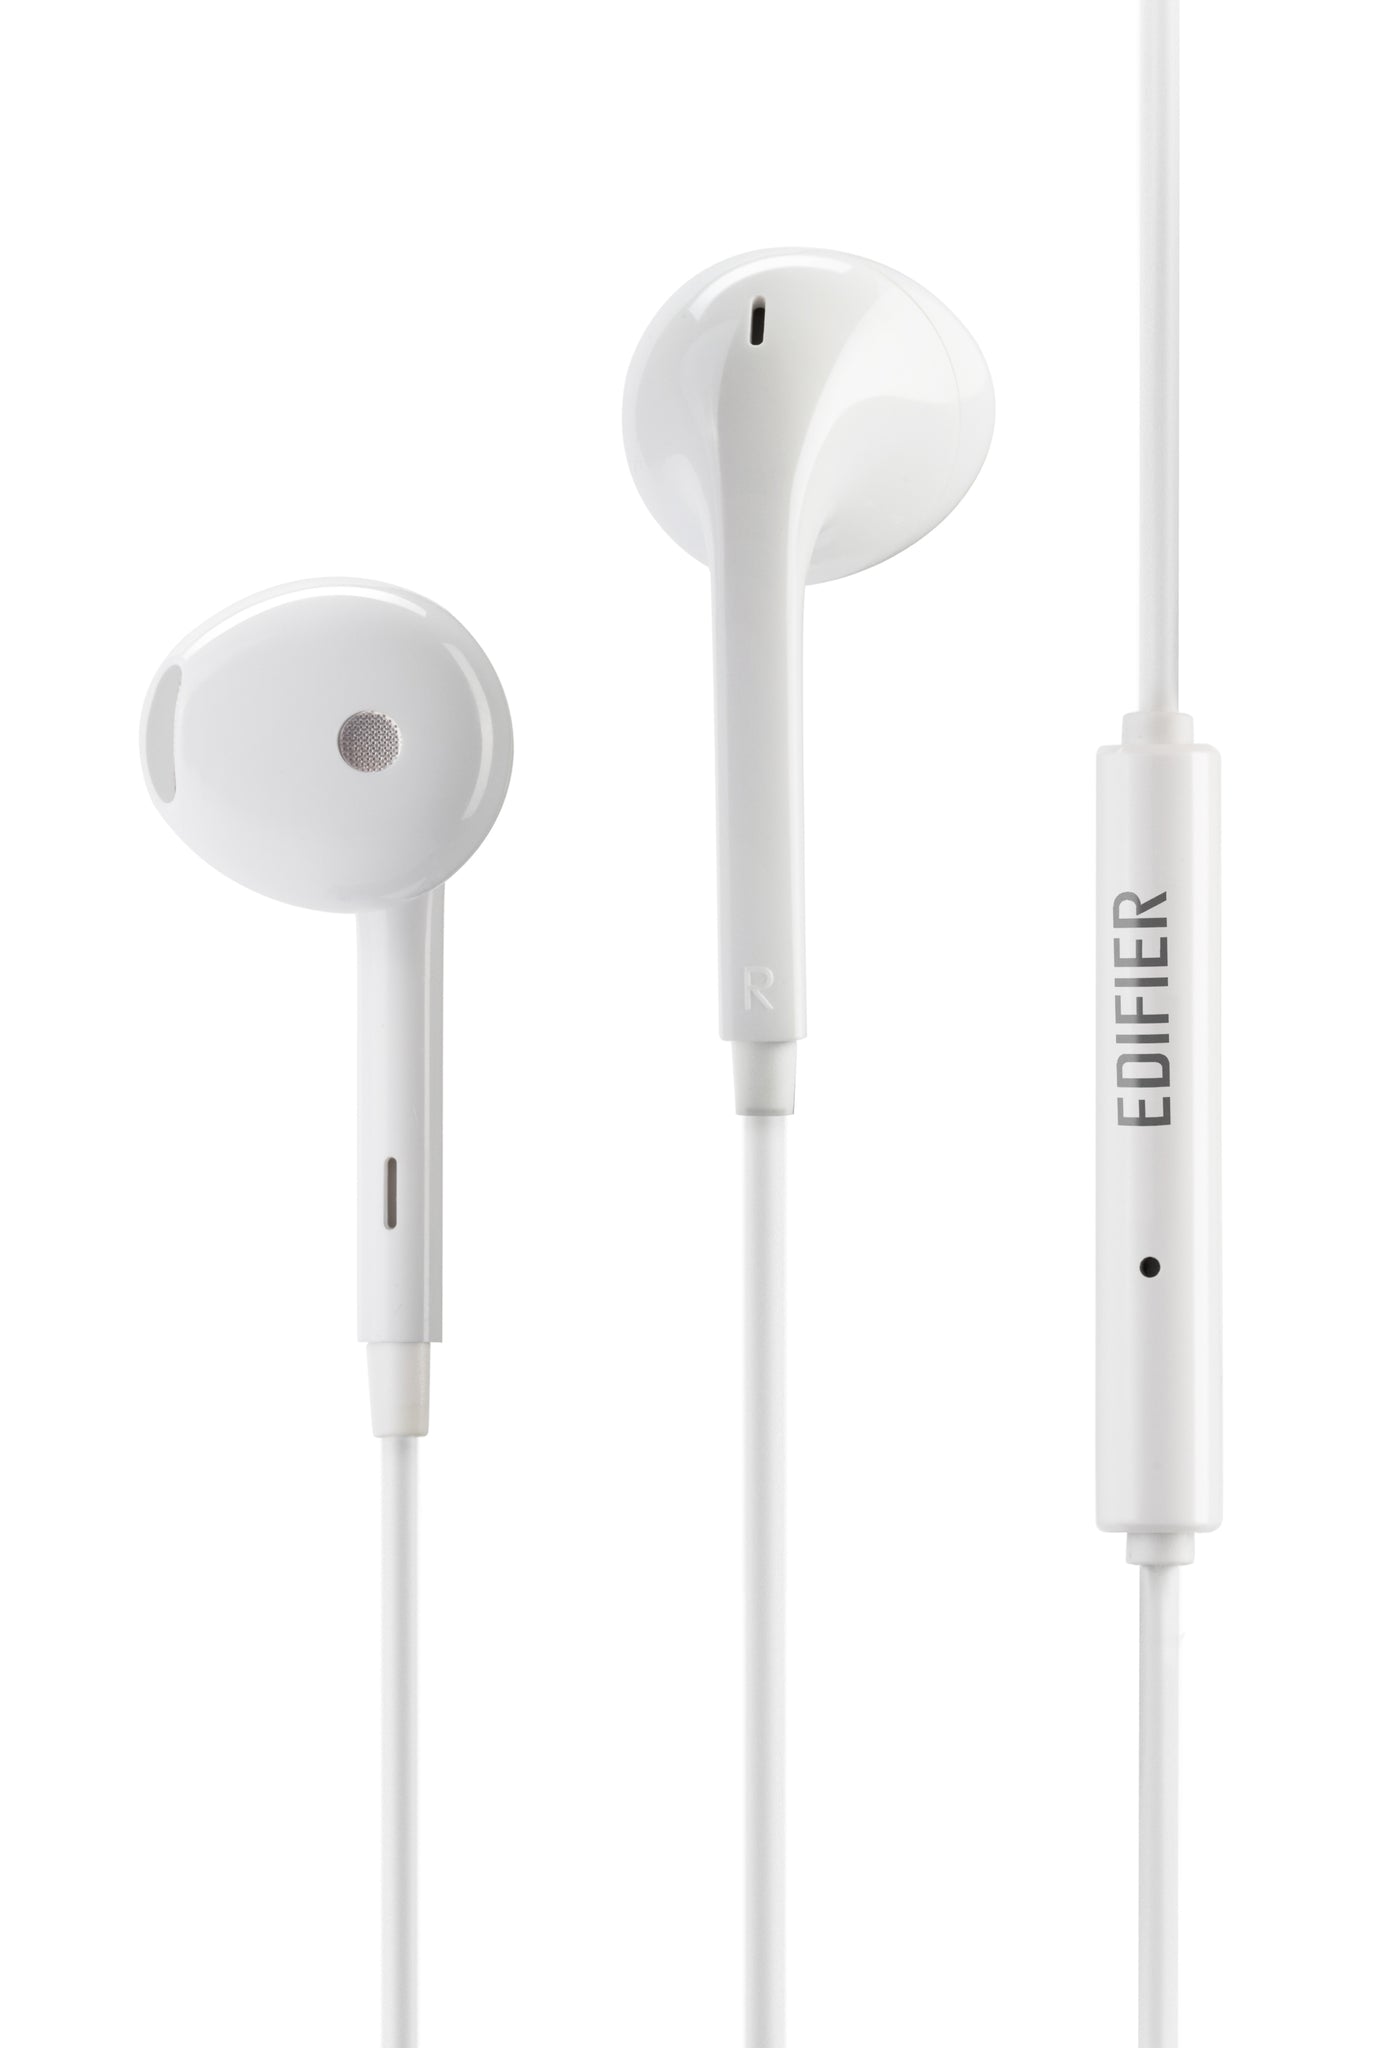 Edifier P180 Plus Semi-In-Ear Earphones With Microphone  - White